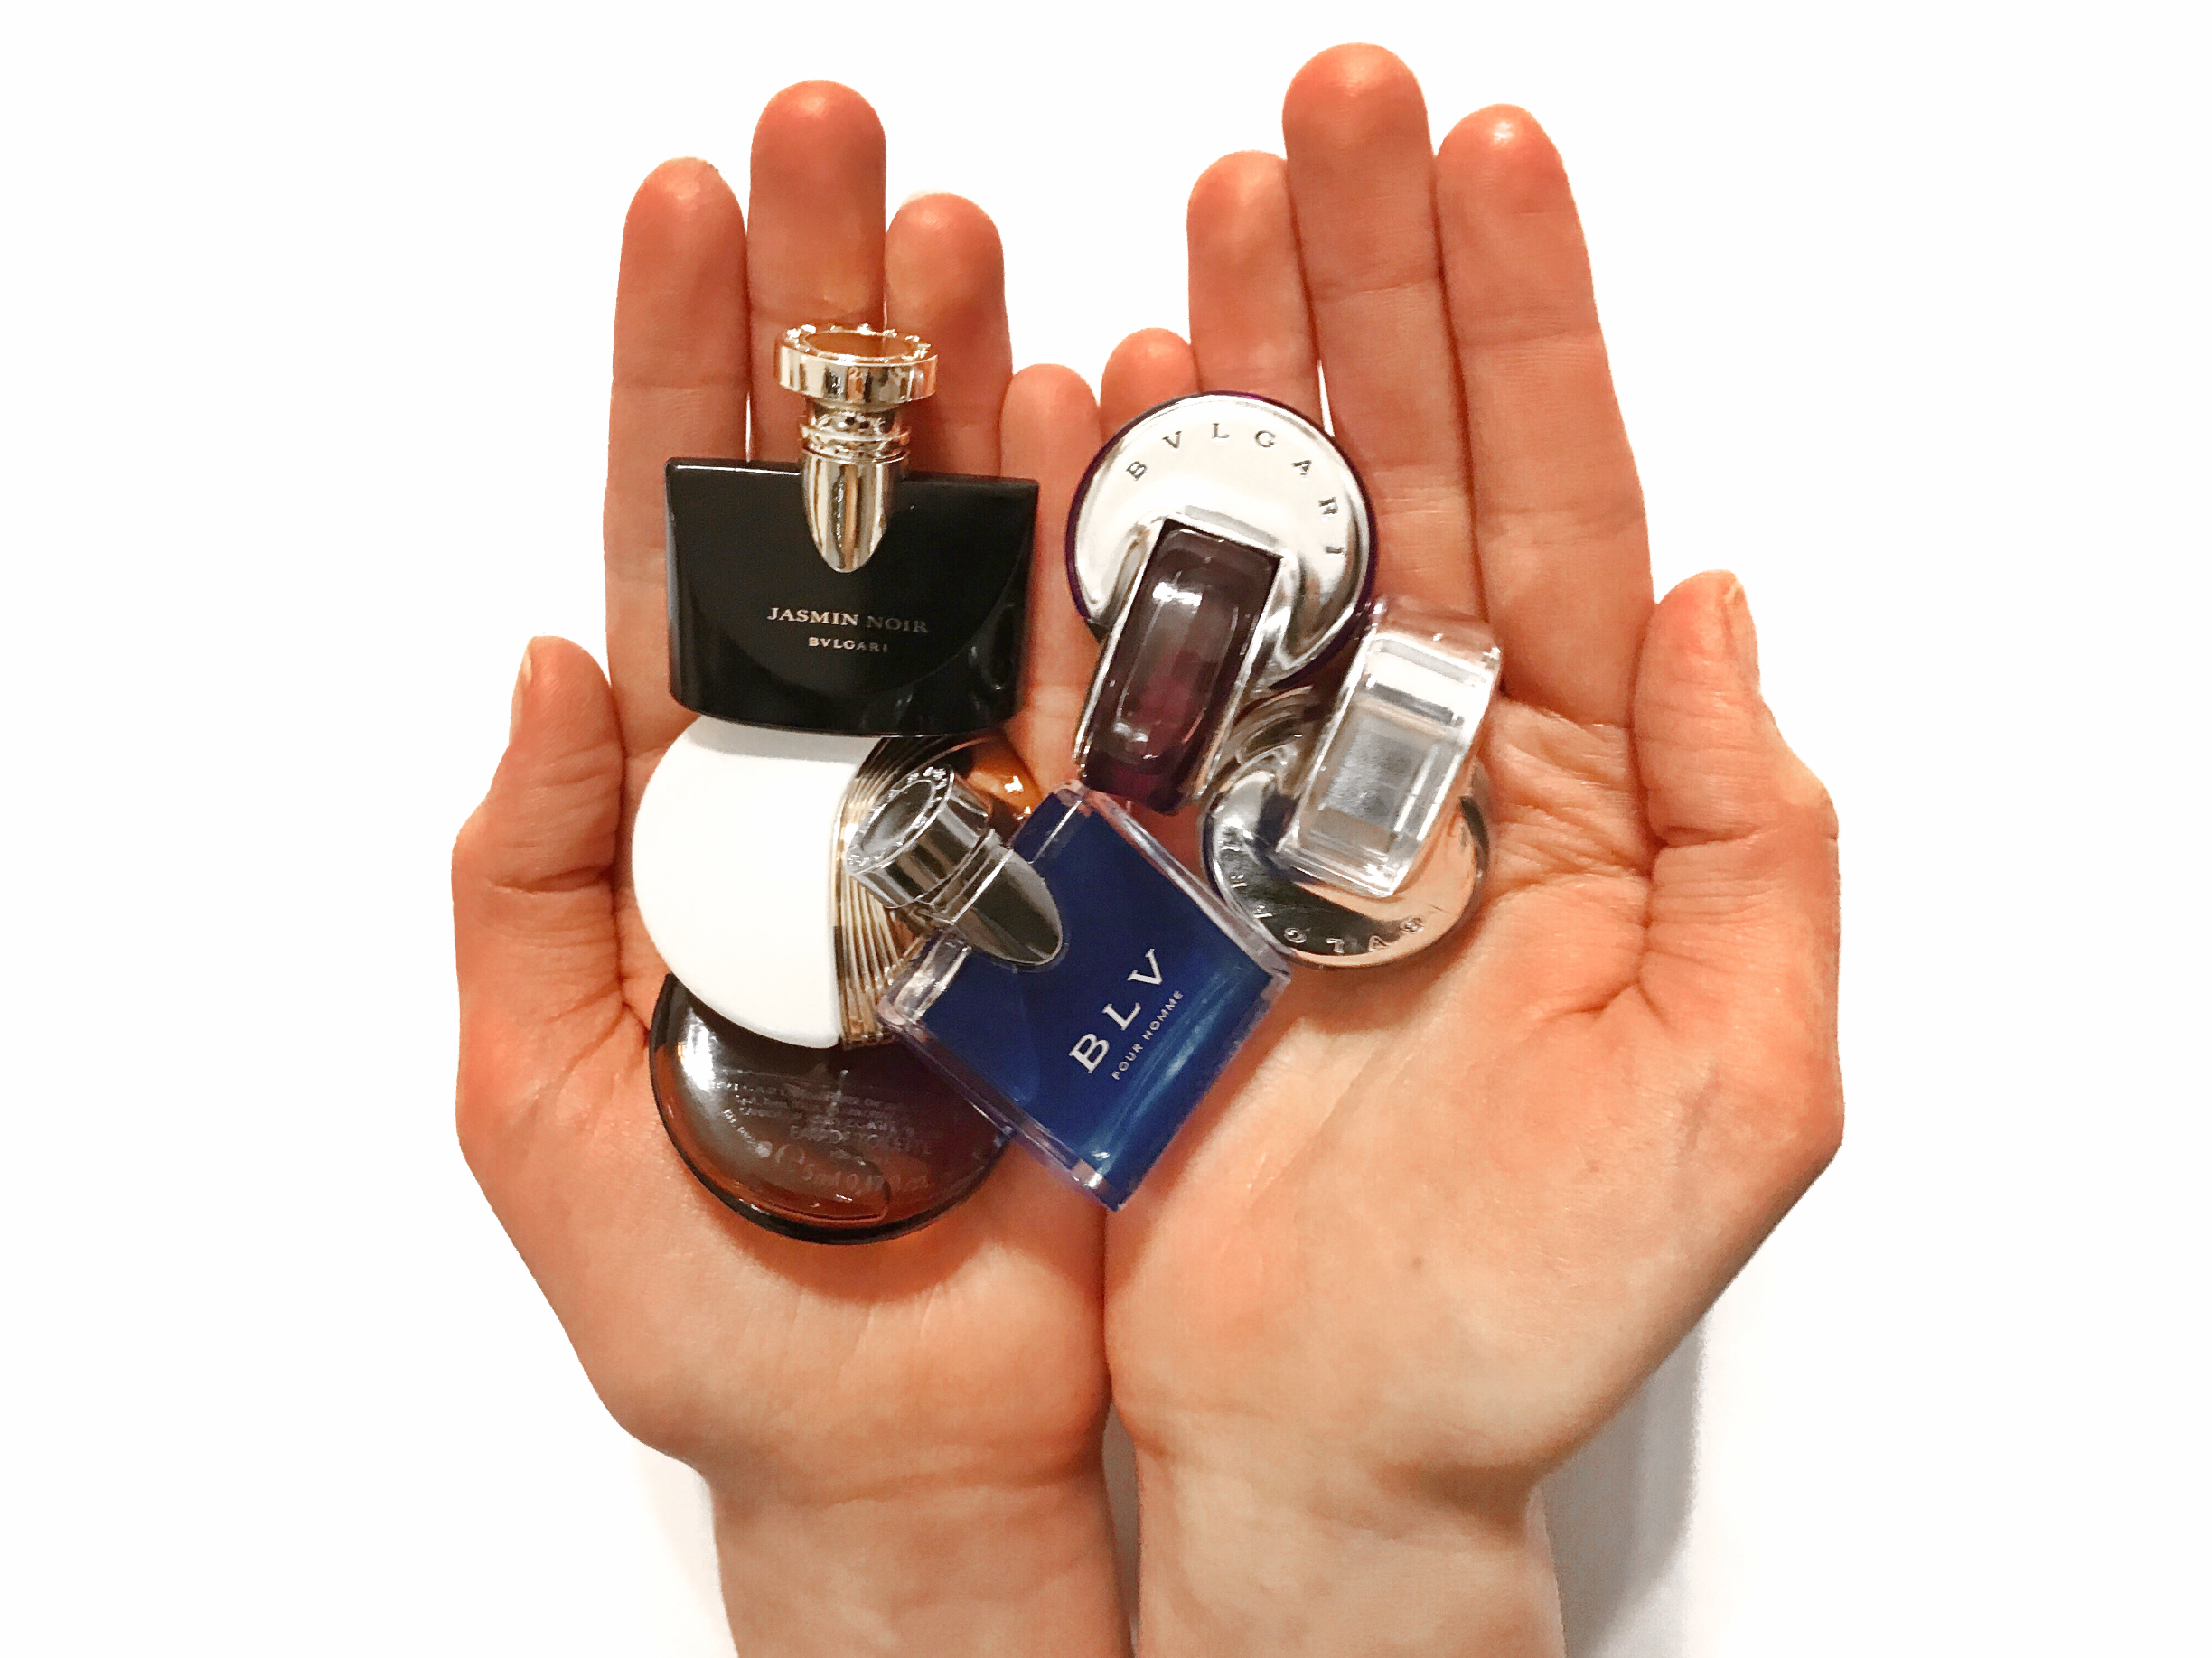 Íme a legaranyosabb parfüm kollekció! - Bvlgari miniatűr szett teszt